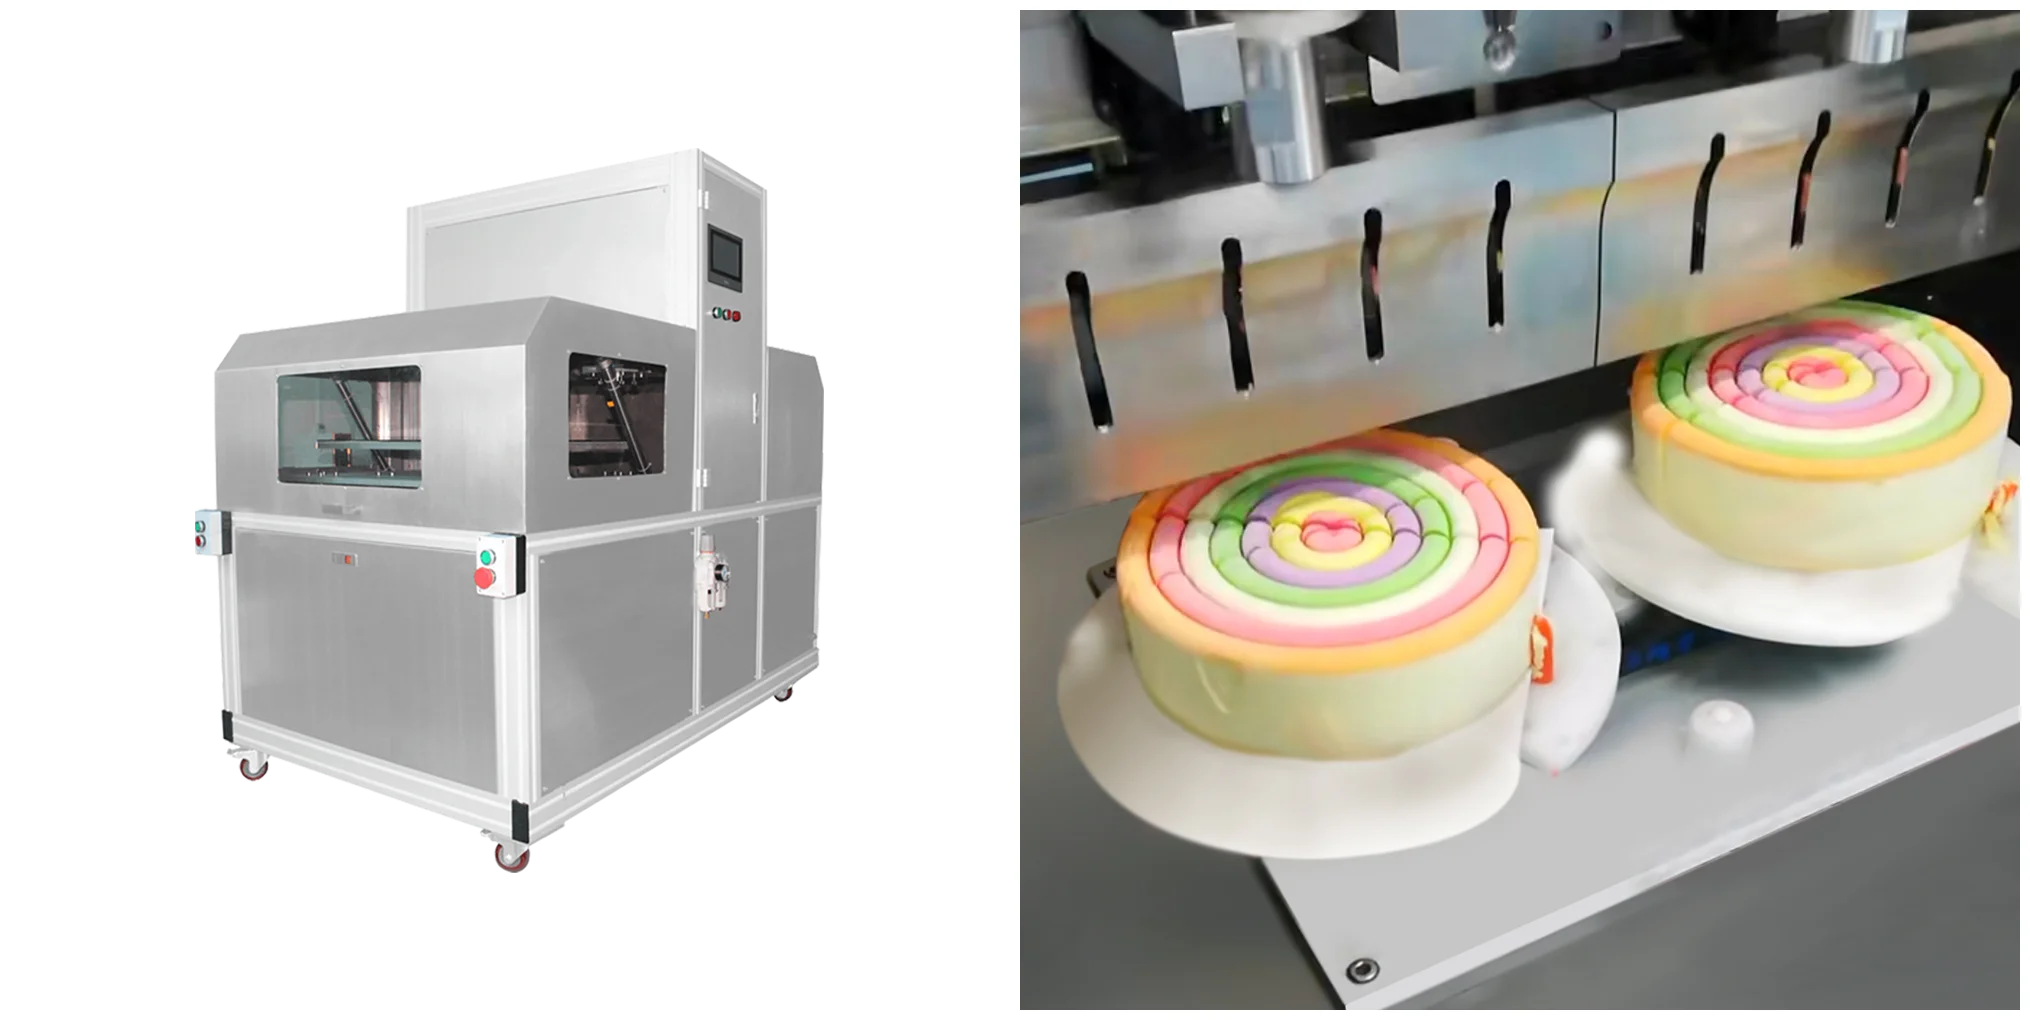 Automatic cake cutter machine #cake cutting machine | Instagram